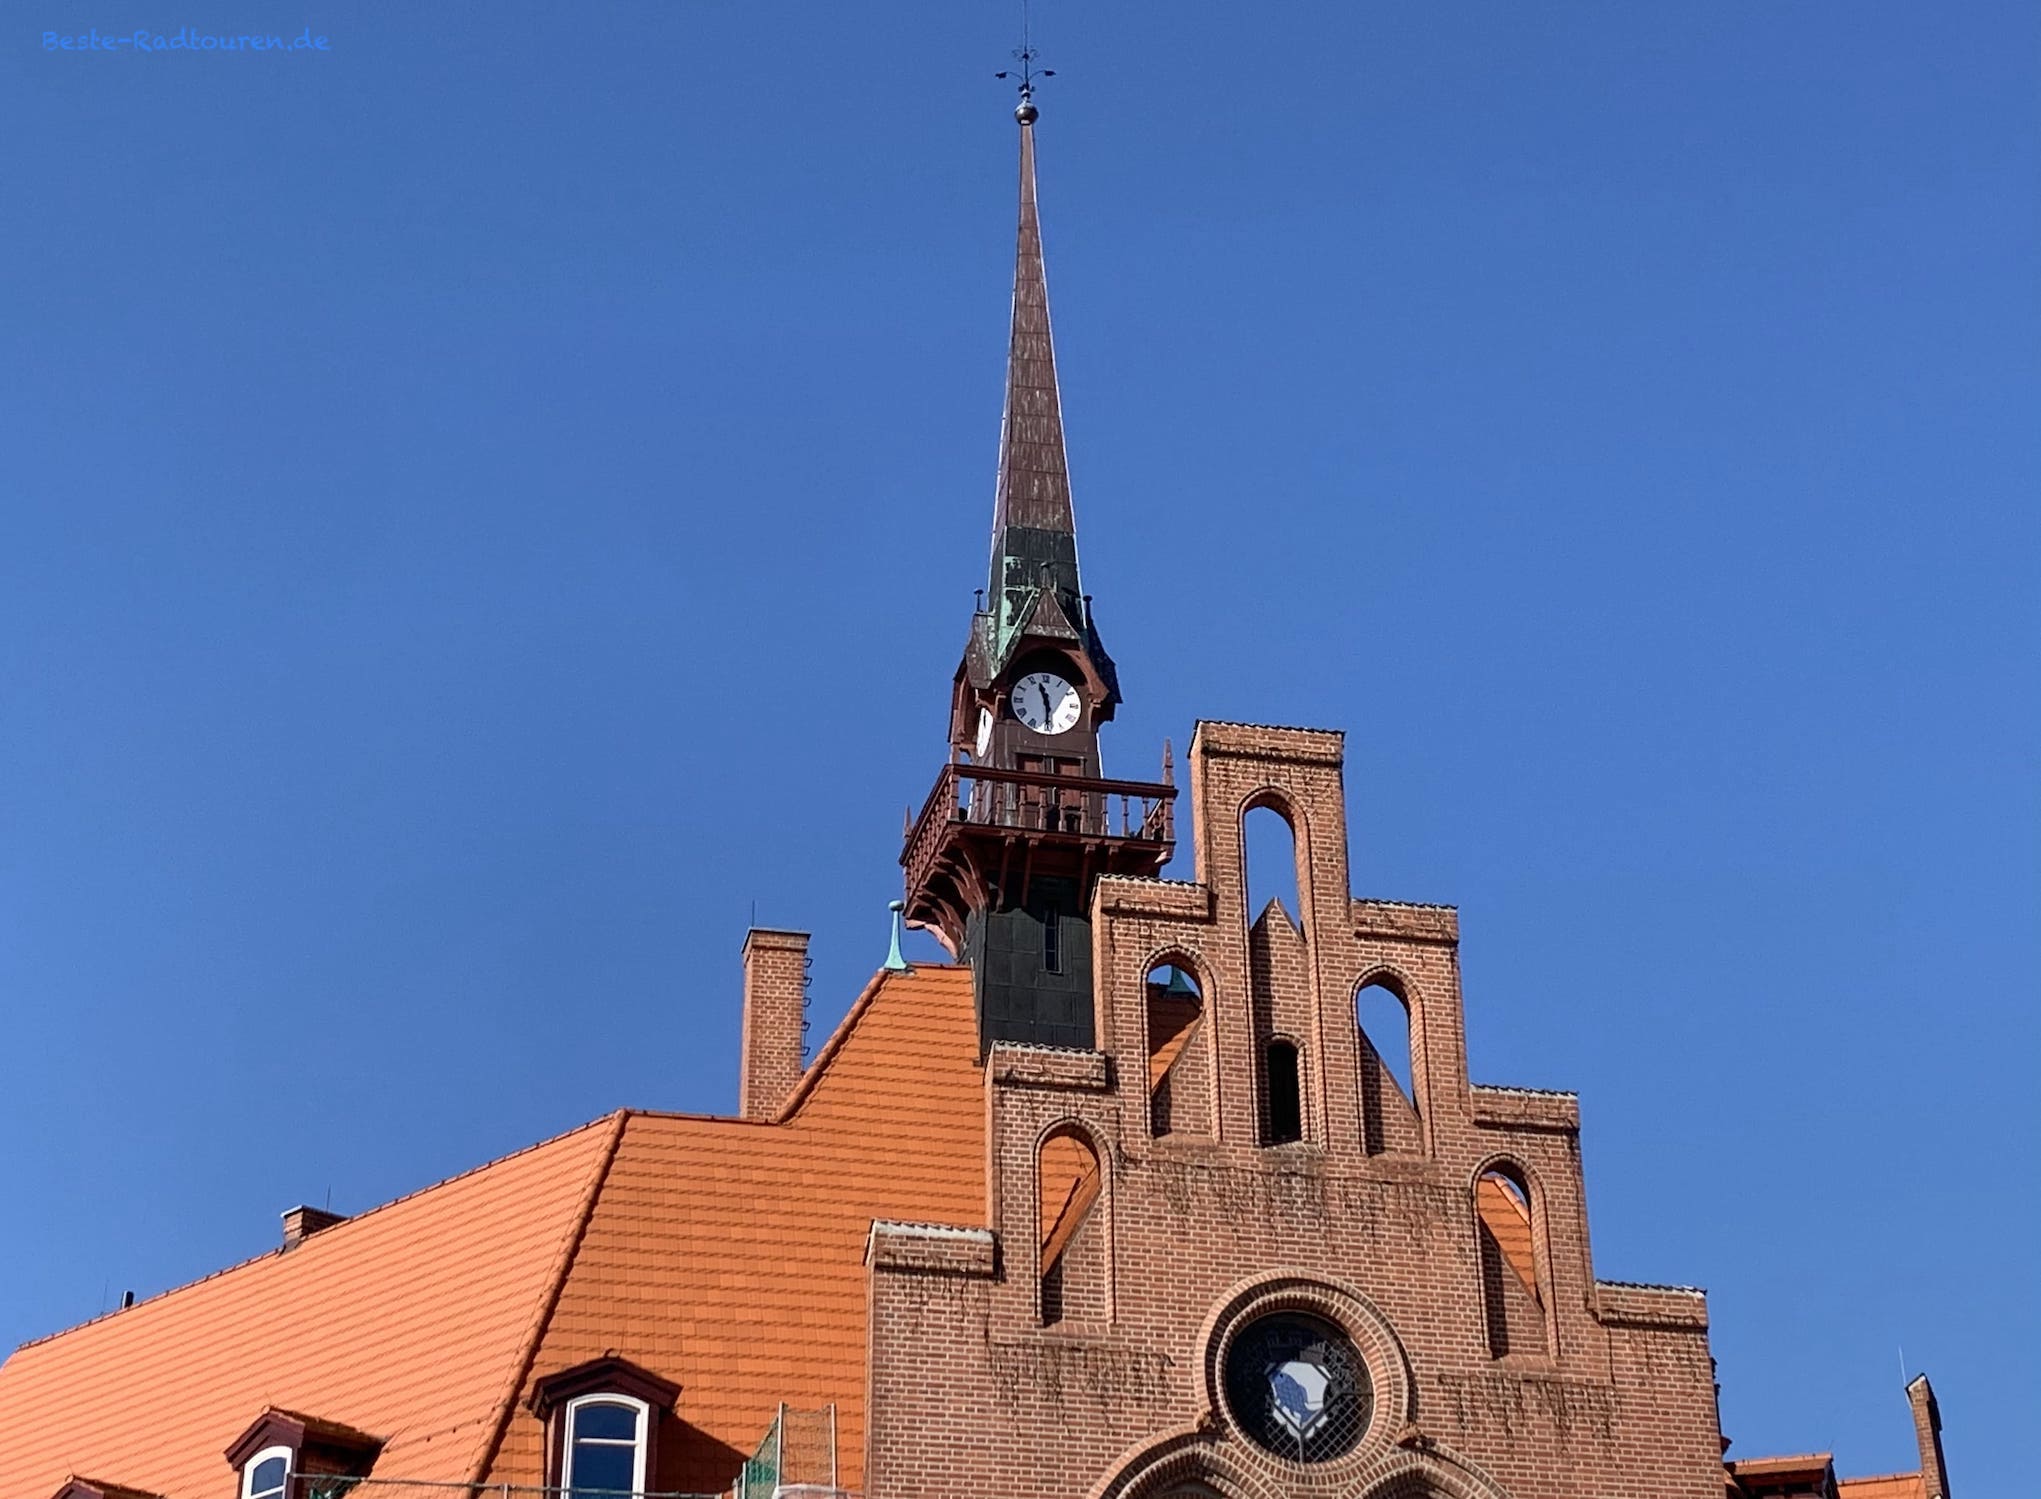 Turmspitze vom Rathaus Nauen, Rundfenster mit Wappen von Nauen